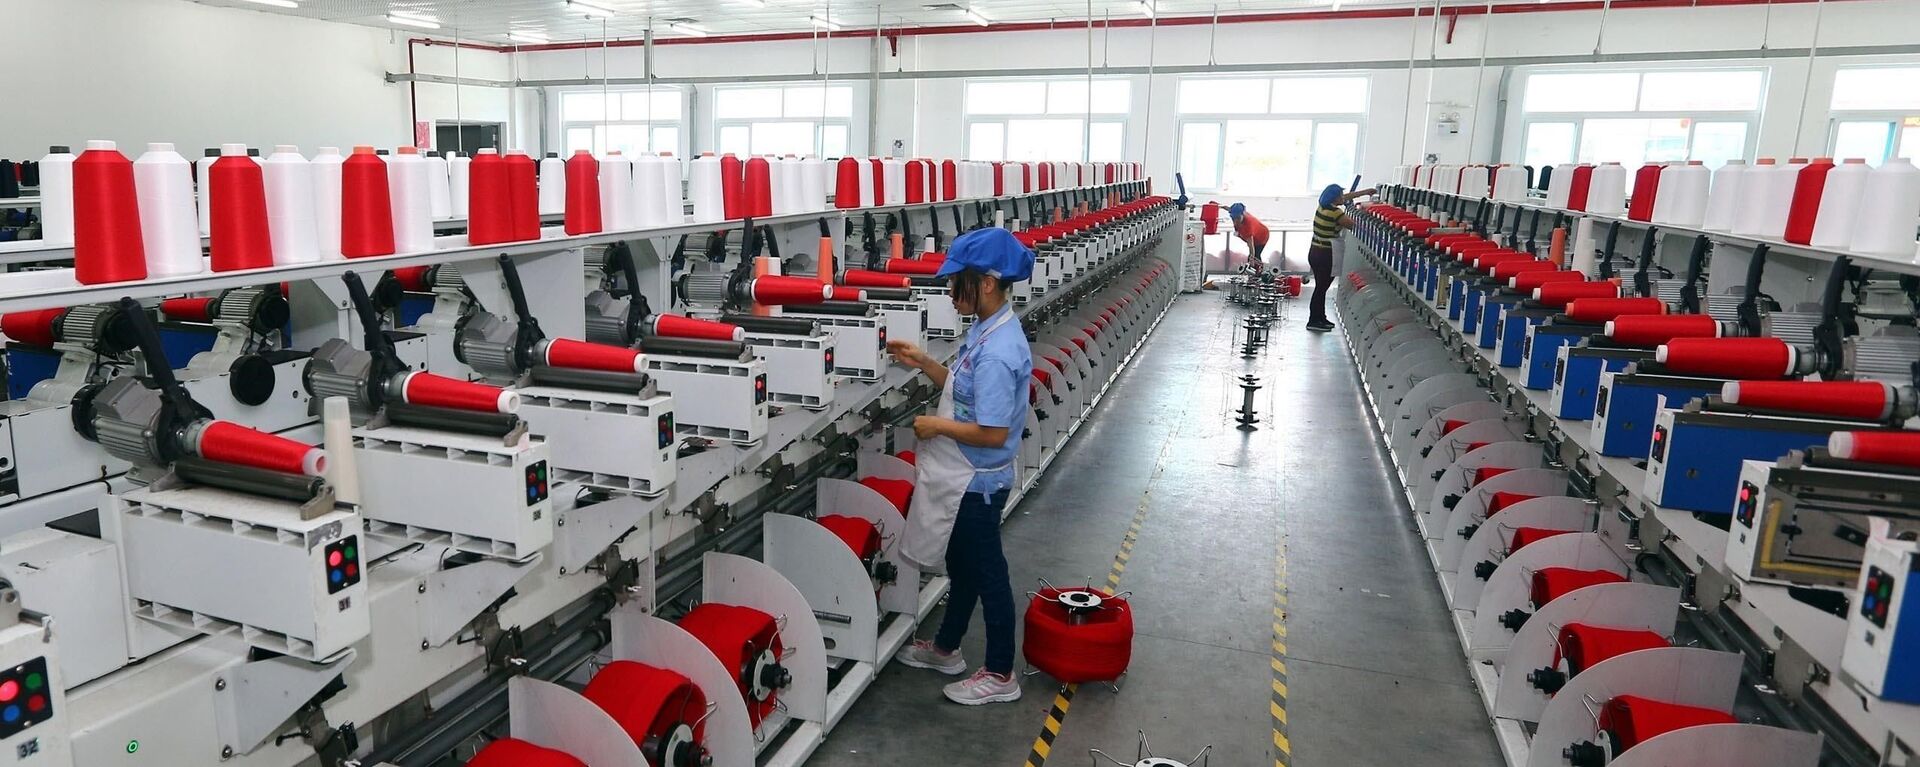 Dây chuyền sản xuất sợi tại Công ty TNHH Dệt nhuộm Jasan Việt Nam, Khu công nghiệp dệt may Phố Nối B (Hưng Yên).  - Sputnik Việt Nam, 1920, 18.07.2019